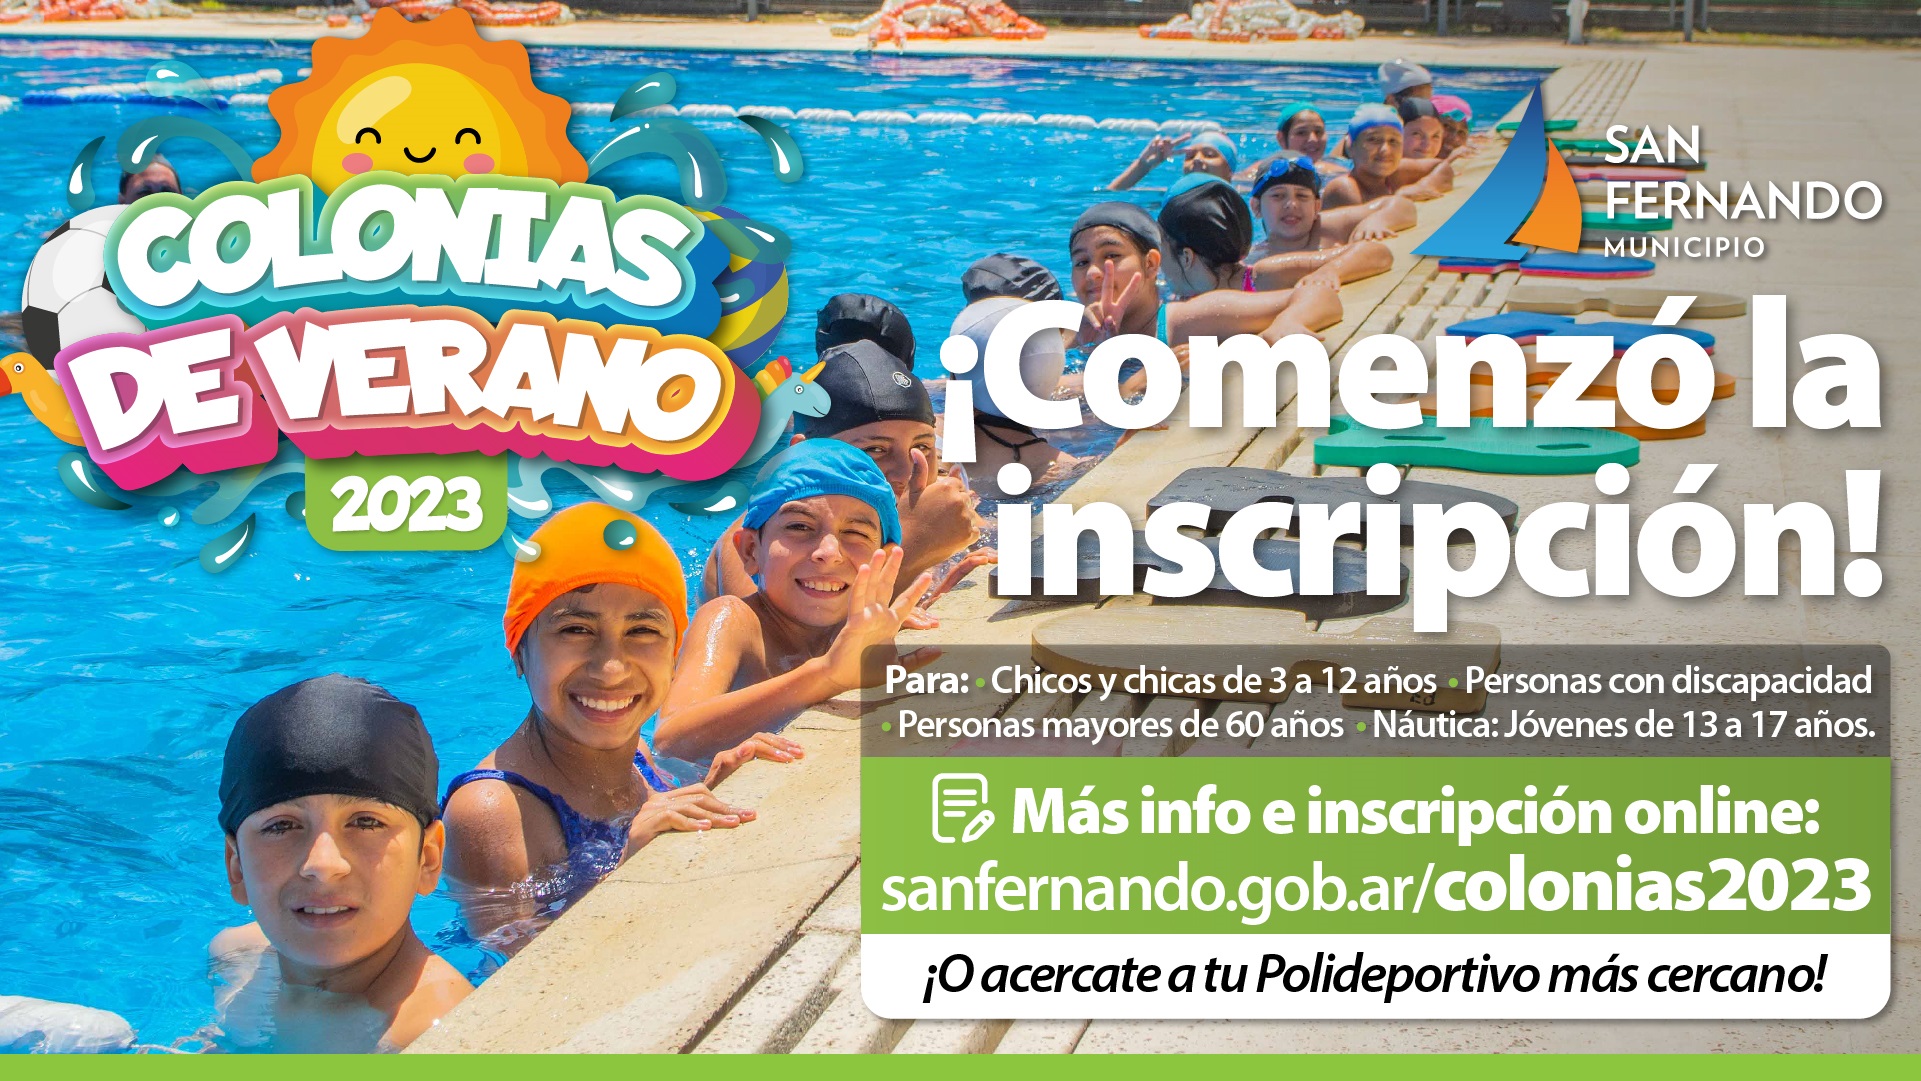 San Fernando empezó la inscripción para sus Colonias de Verano 2023, online y en los Polideportivos